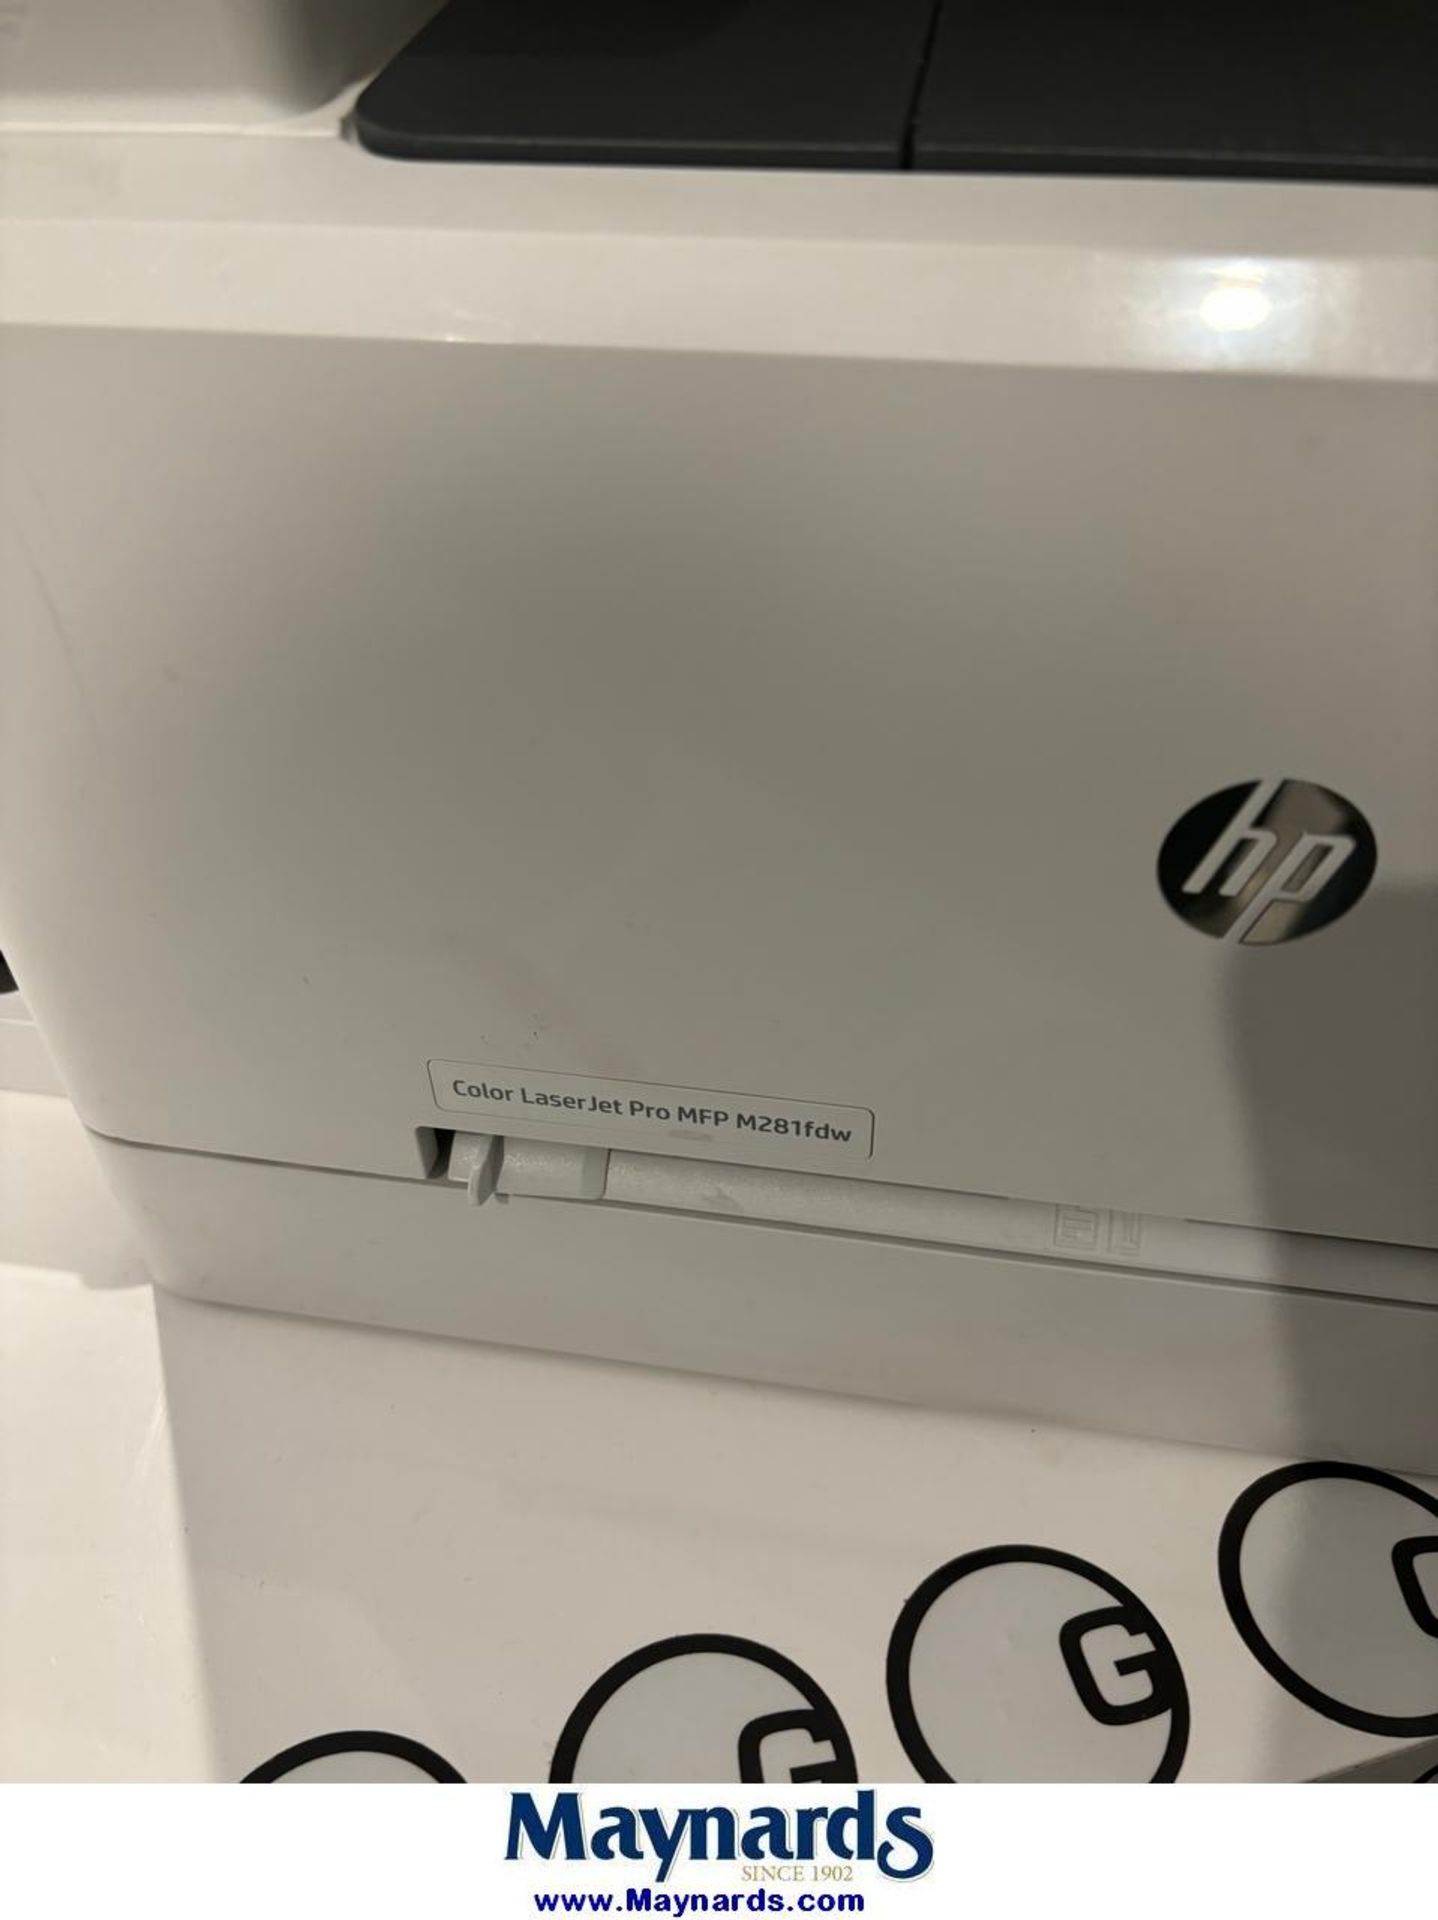 HP laser printer - Image 2 of 3